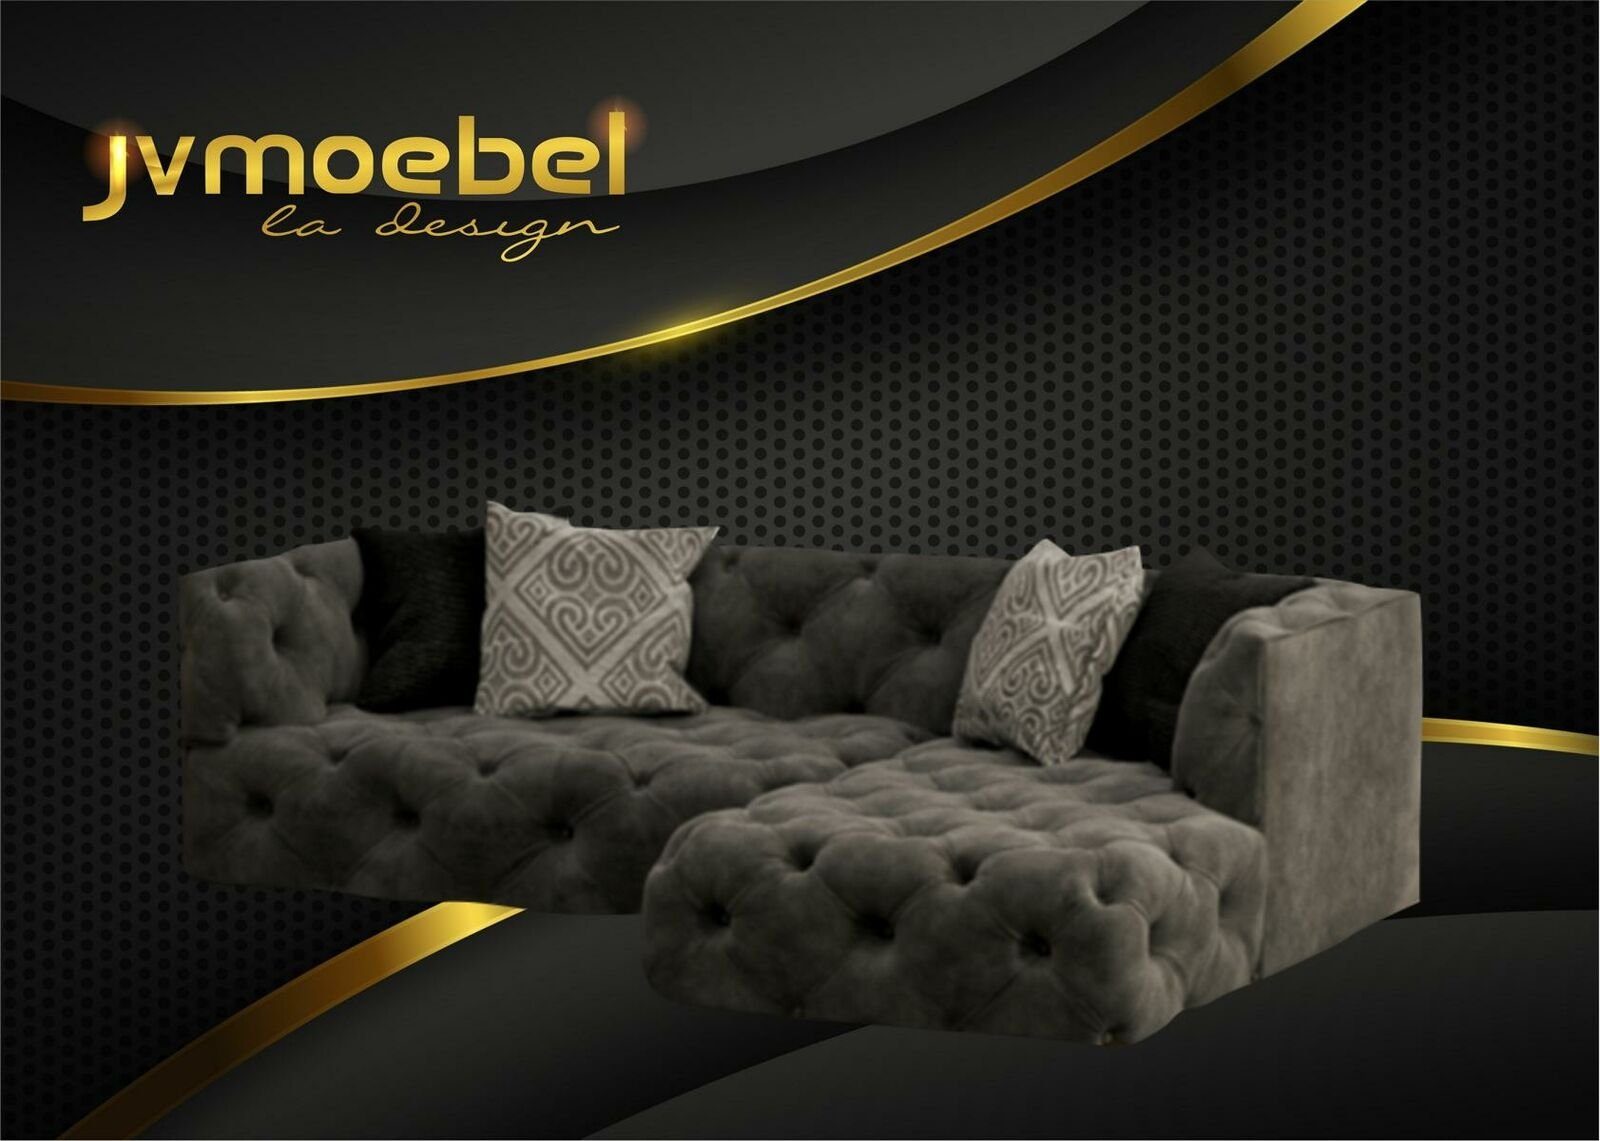 JVmoebel Ecksofa Braunes Chesterfield Design Made Grau Couch Europe Polstermöbel Neu, in L-Form